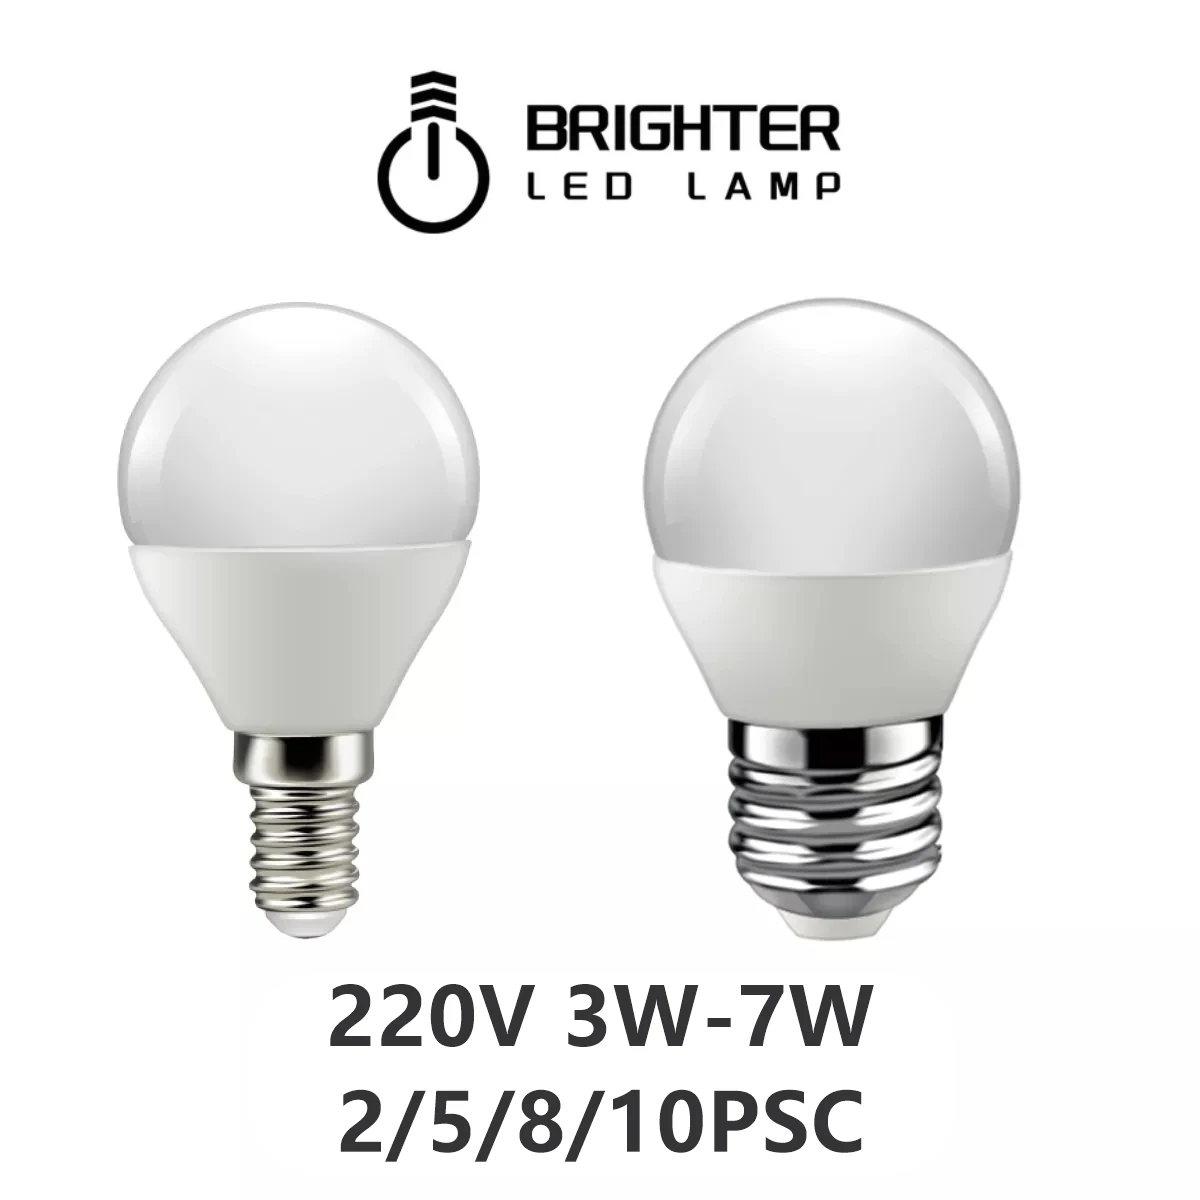 2/10 ADET LED top ampul G45 220V 3W-7W Paslanmaz yüksek lümen sıcak beyaz ışık avize aşağı lamba kristal lamba mutfak banyo